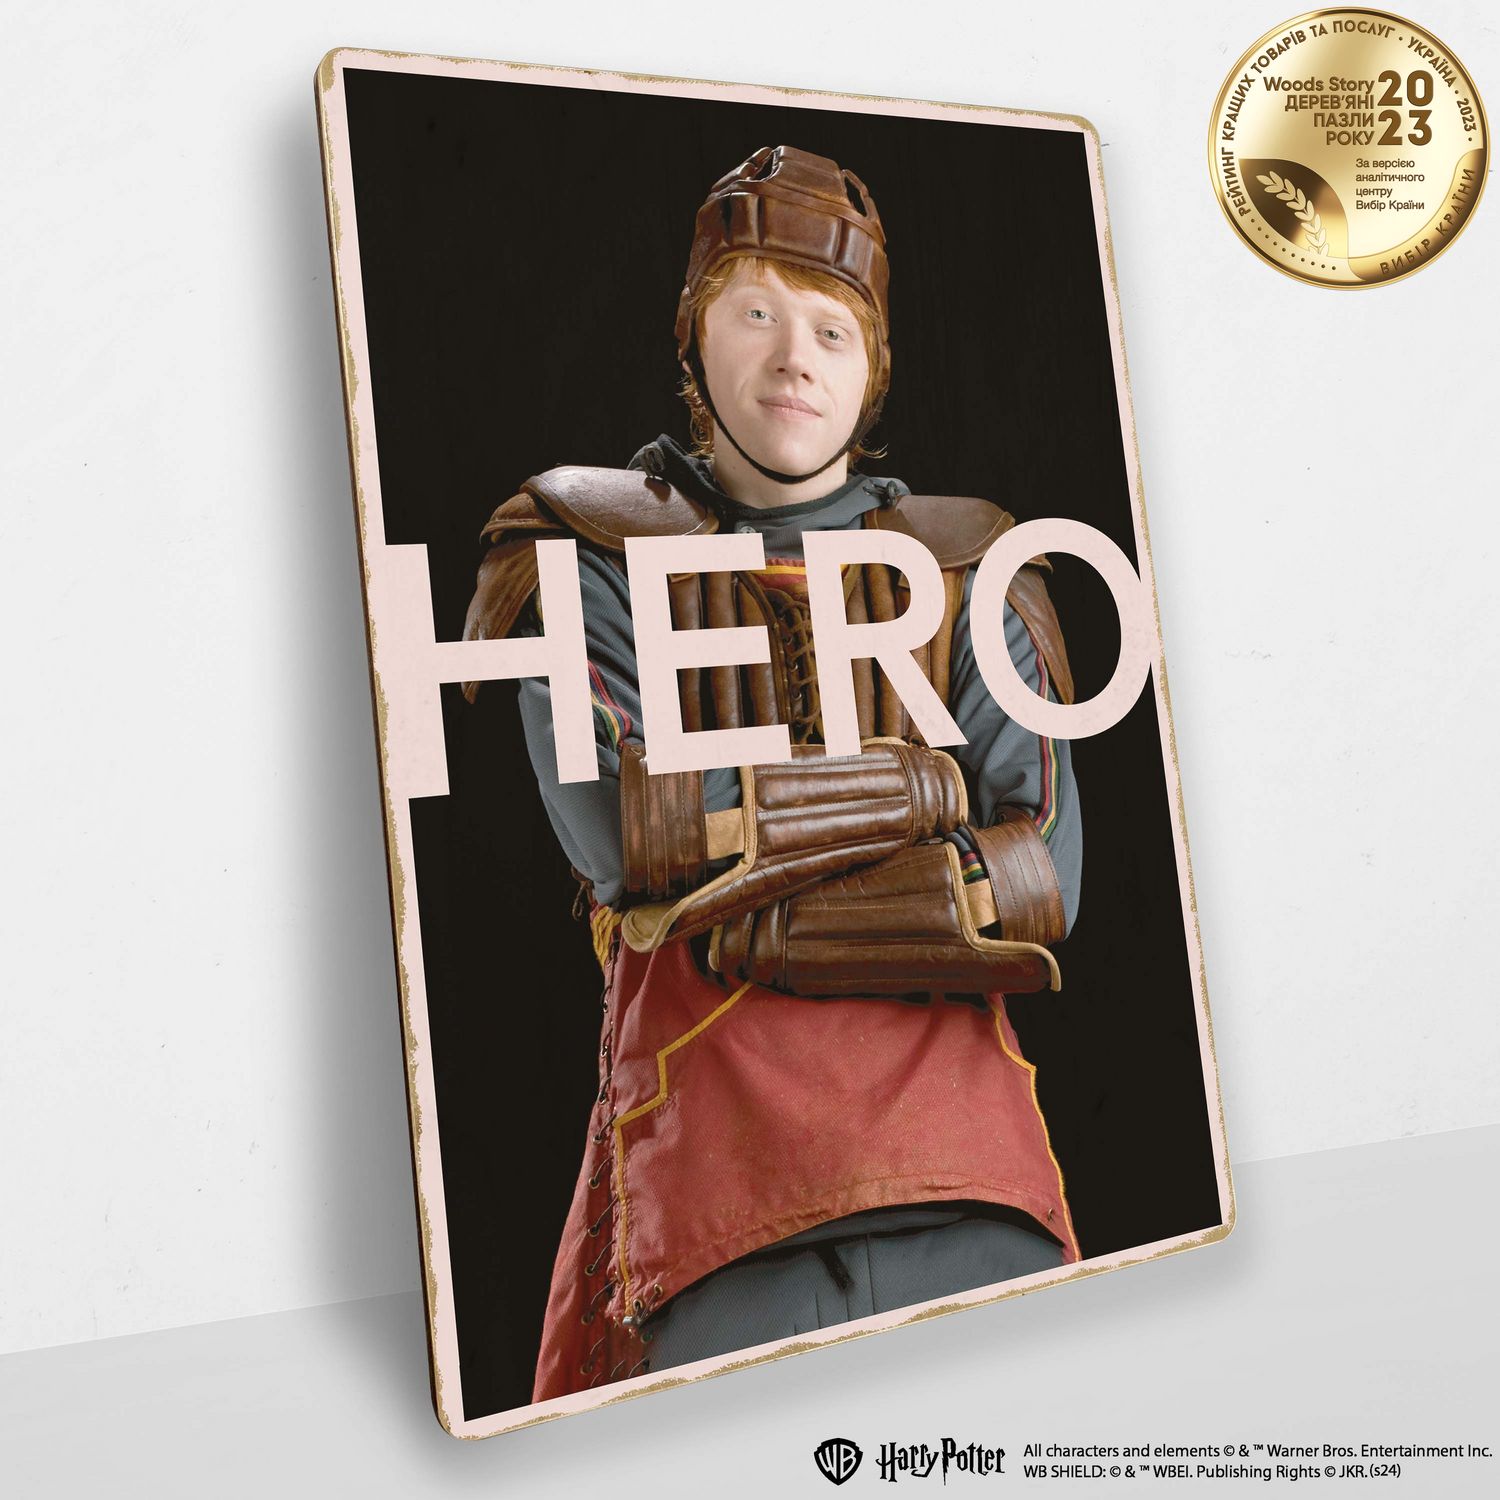 Дерев'яний постер Гаррі Поттер Рон Візлі™ (Hero)